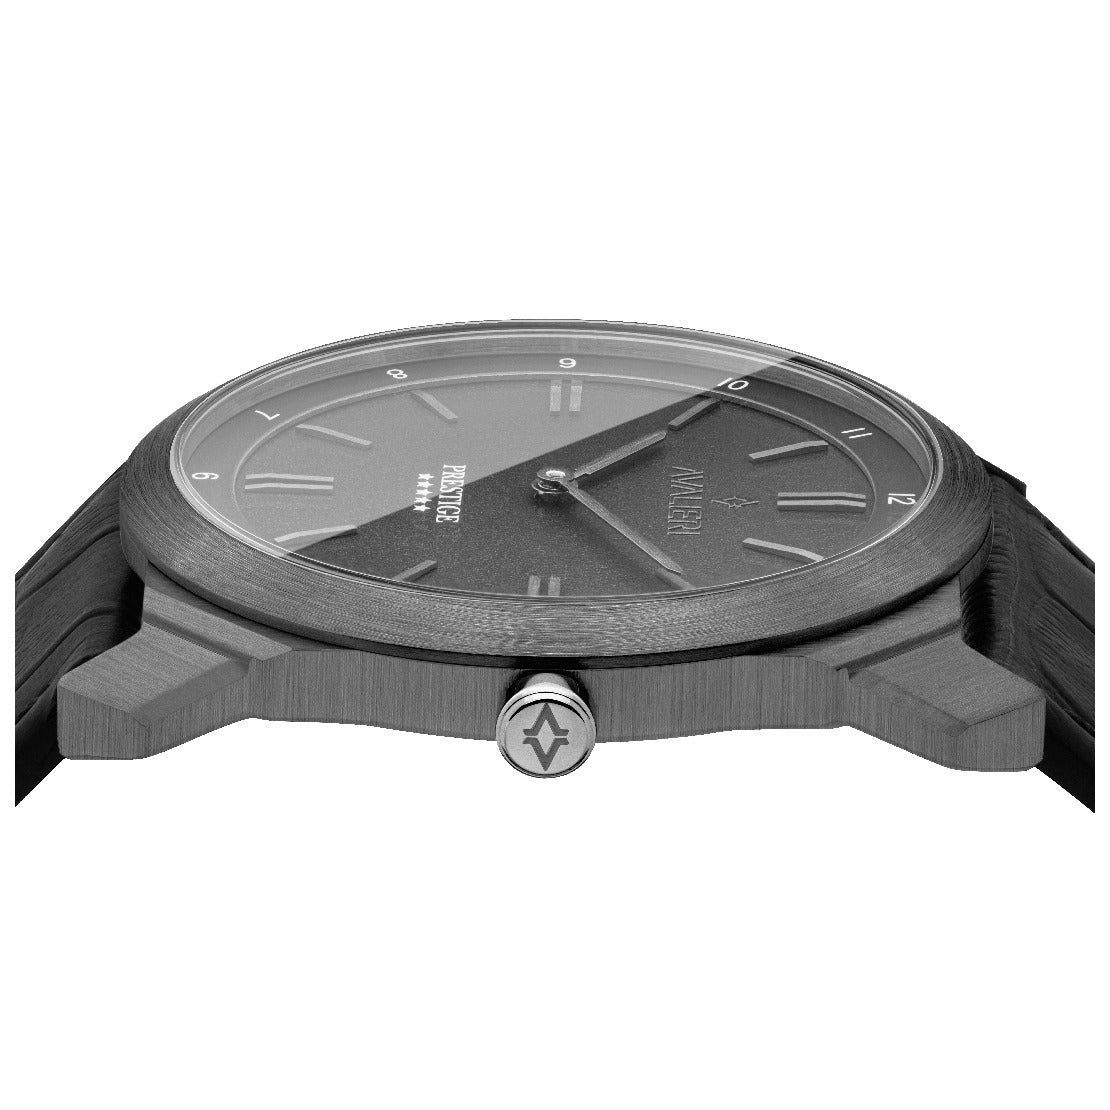 ساعة أفاليري برستيج الرجالية بحركة كوارتز السويسرية ولون مينا رمادي - AP-0103